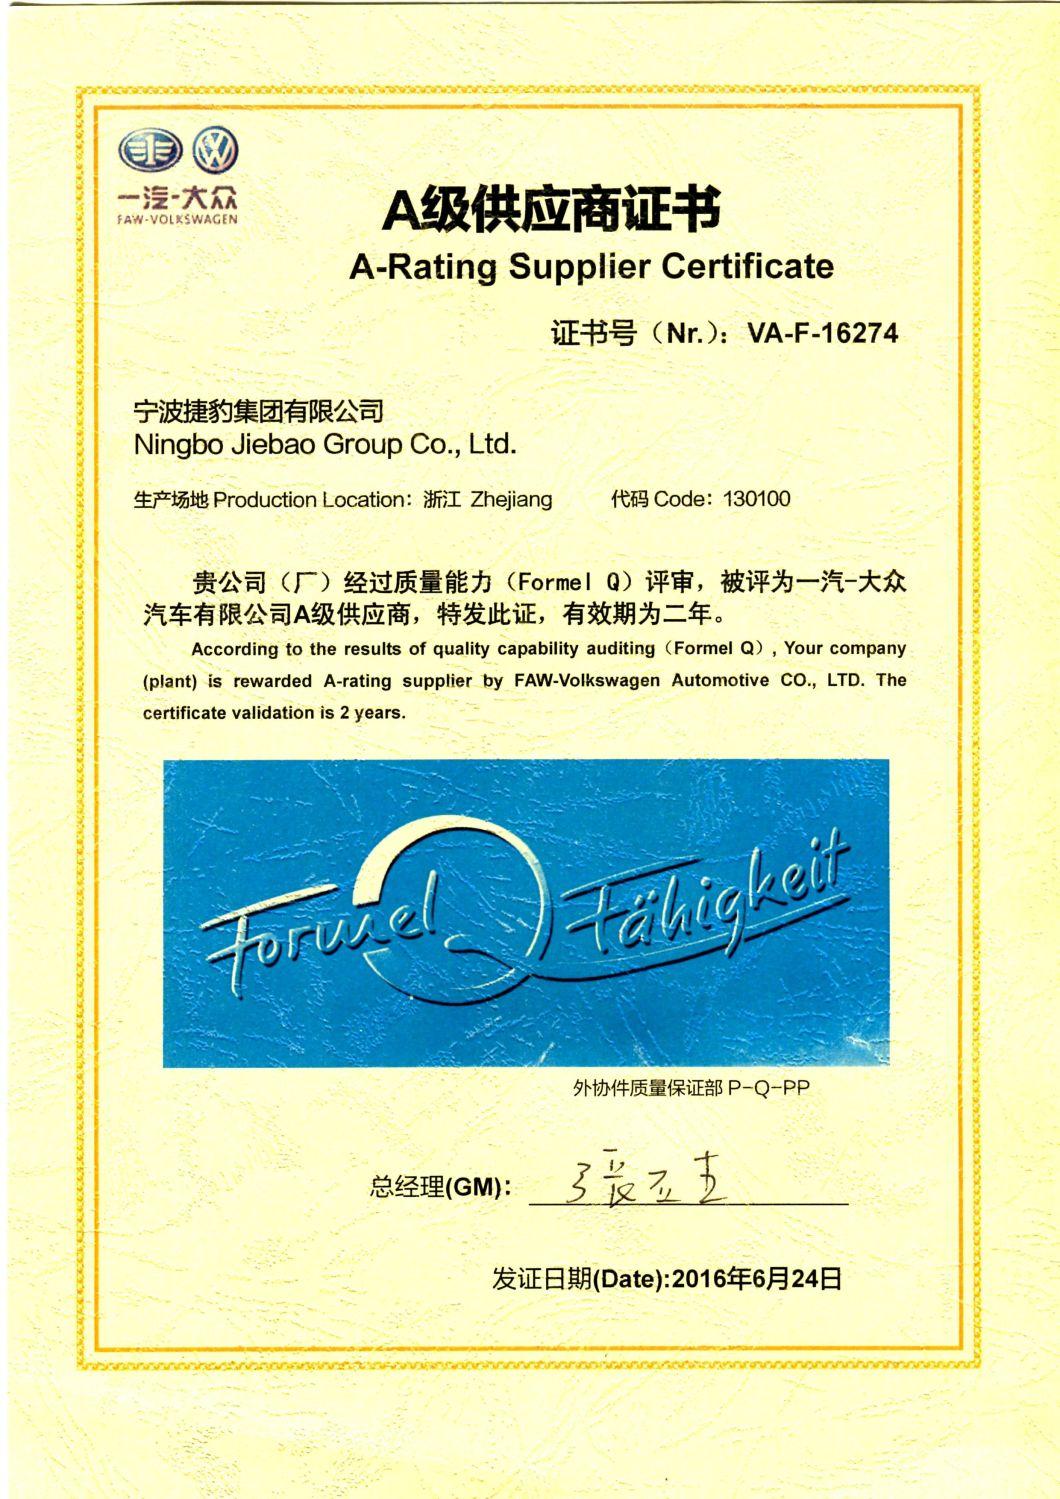 General Motors Belt Maker - Jiebao OEM Neoprene Transmission Parts Fan Automotive Textile Garment Packaging Agricultural Machinery T2.5 Toothed Belt